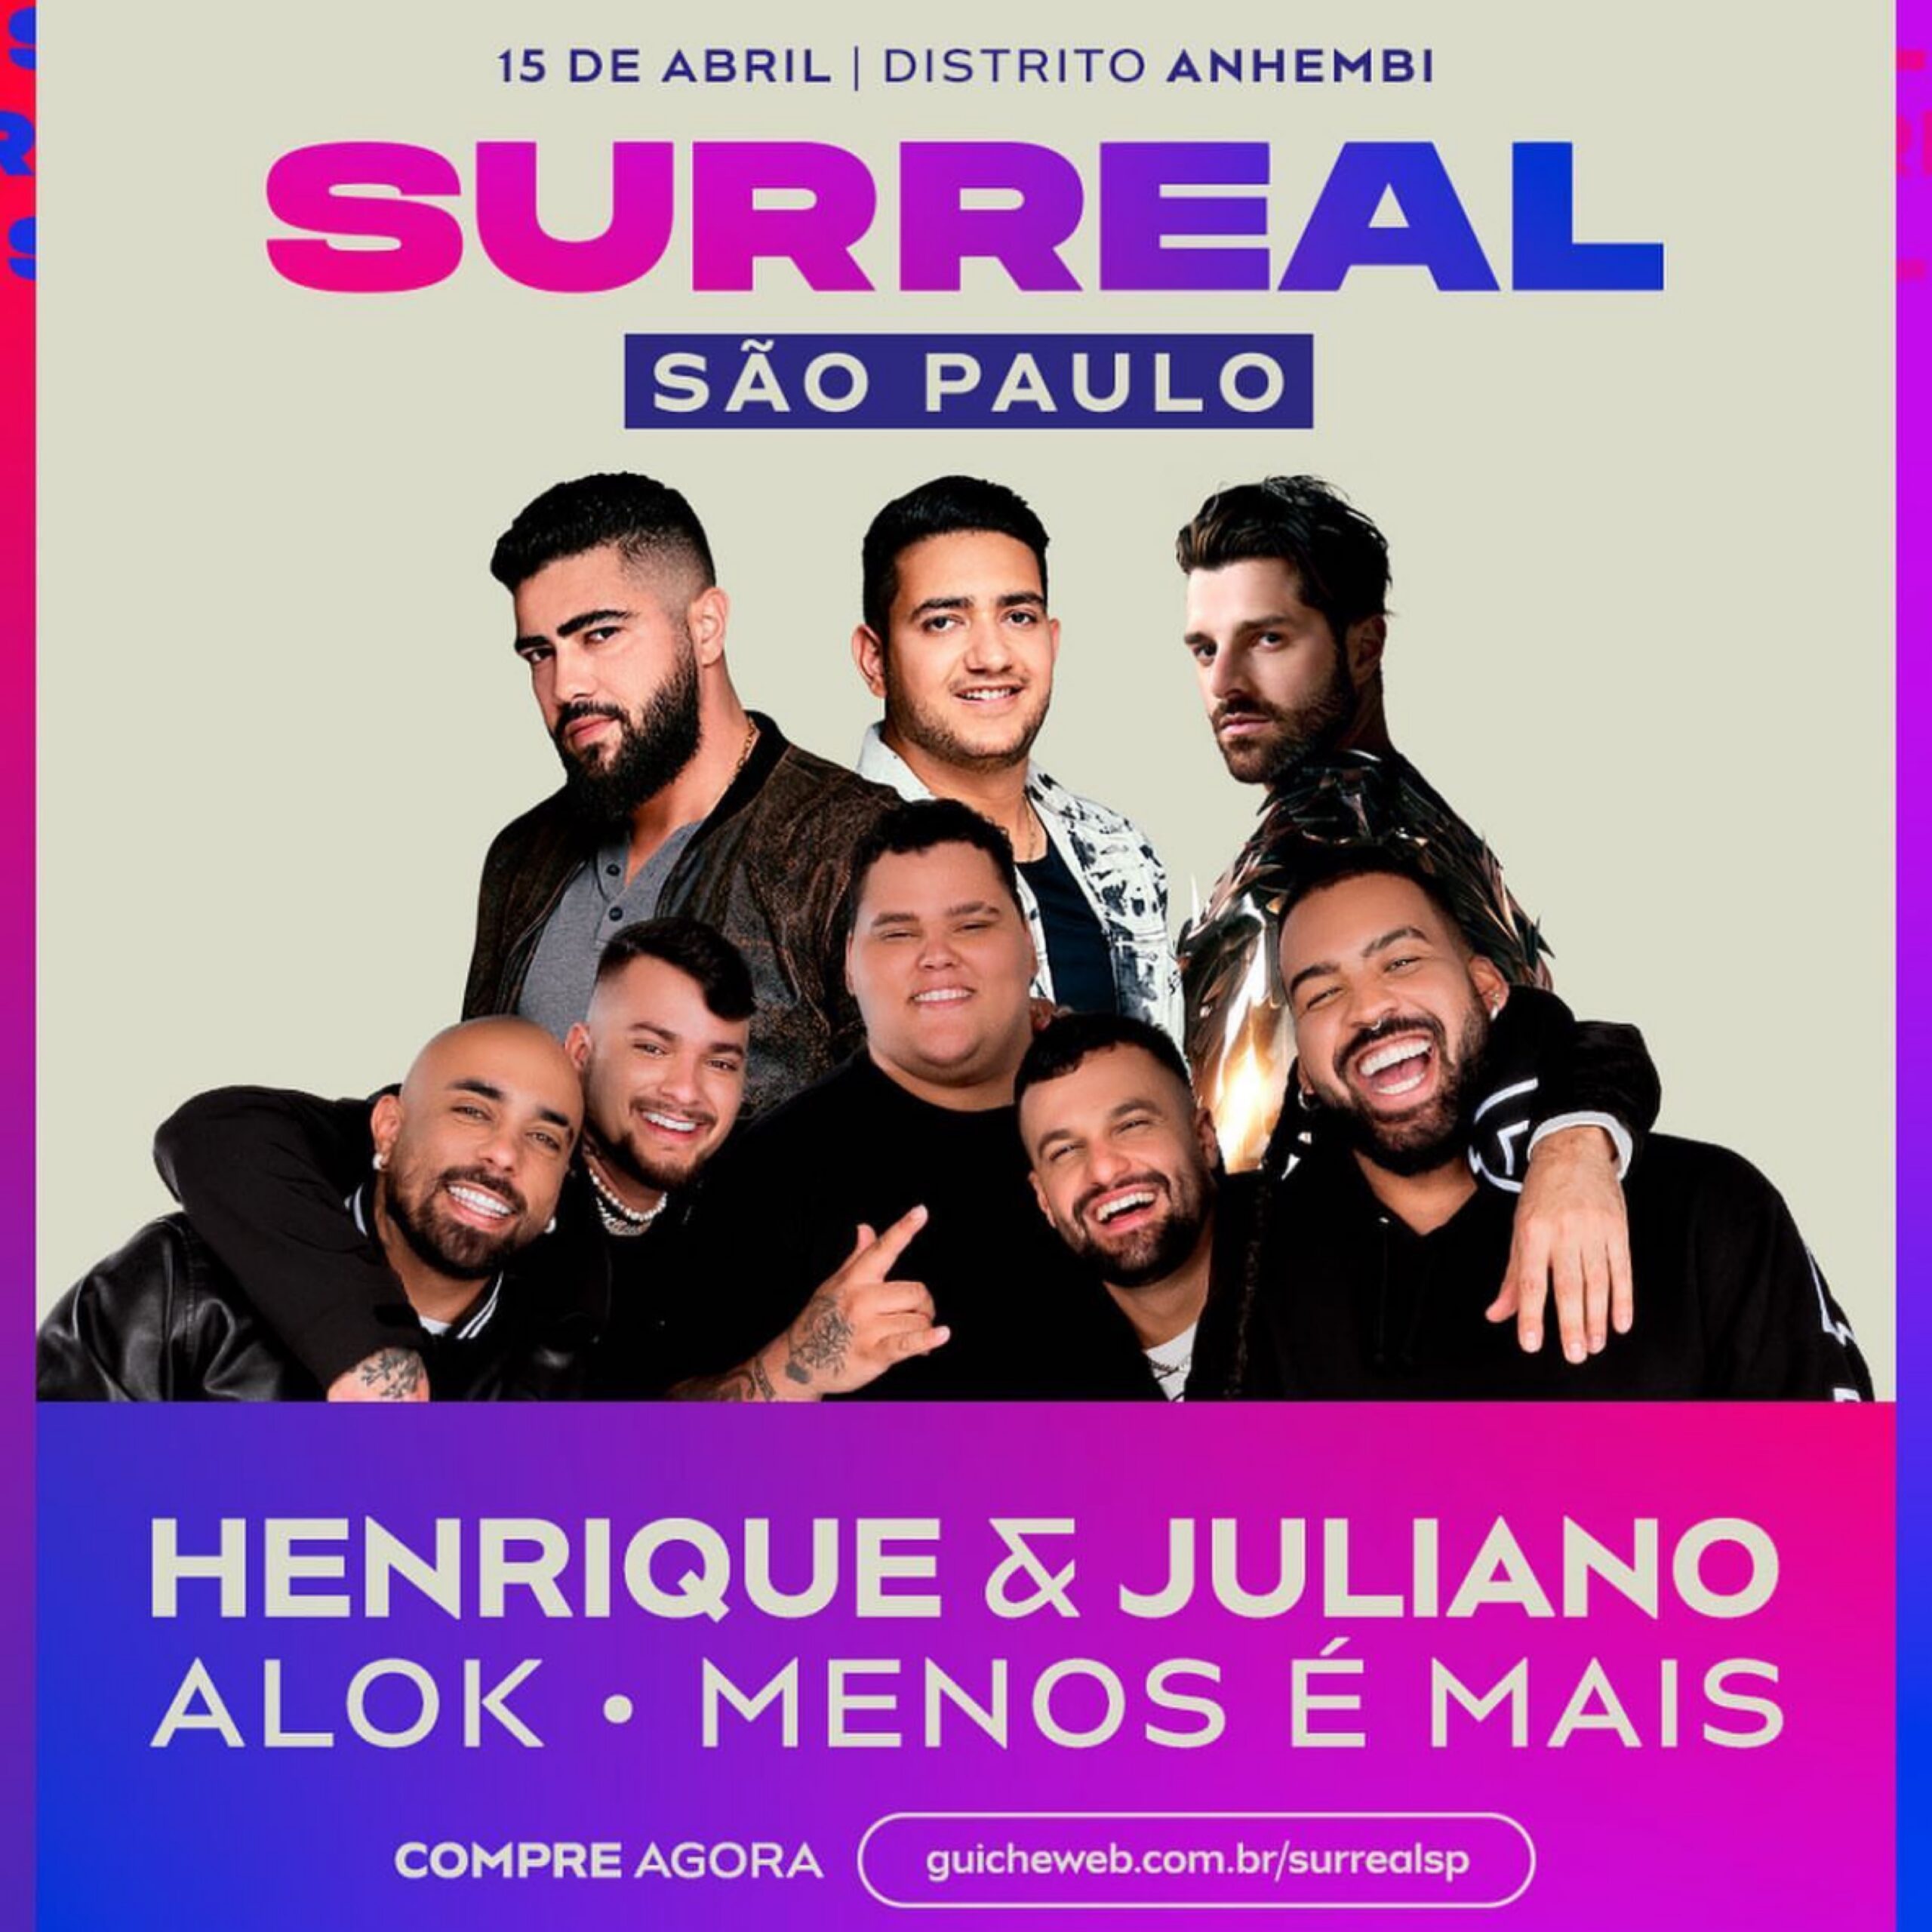 Henrique e Juliano - RANCOROSA - DVD To Be Ao Vivo Em Brasília